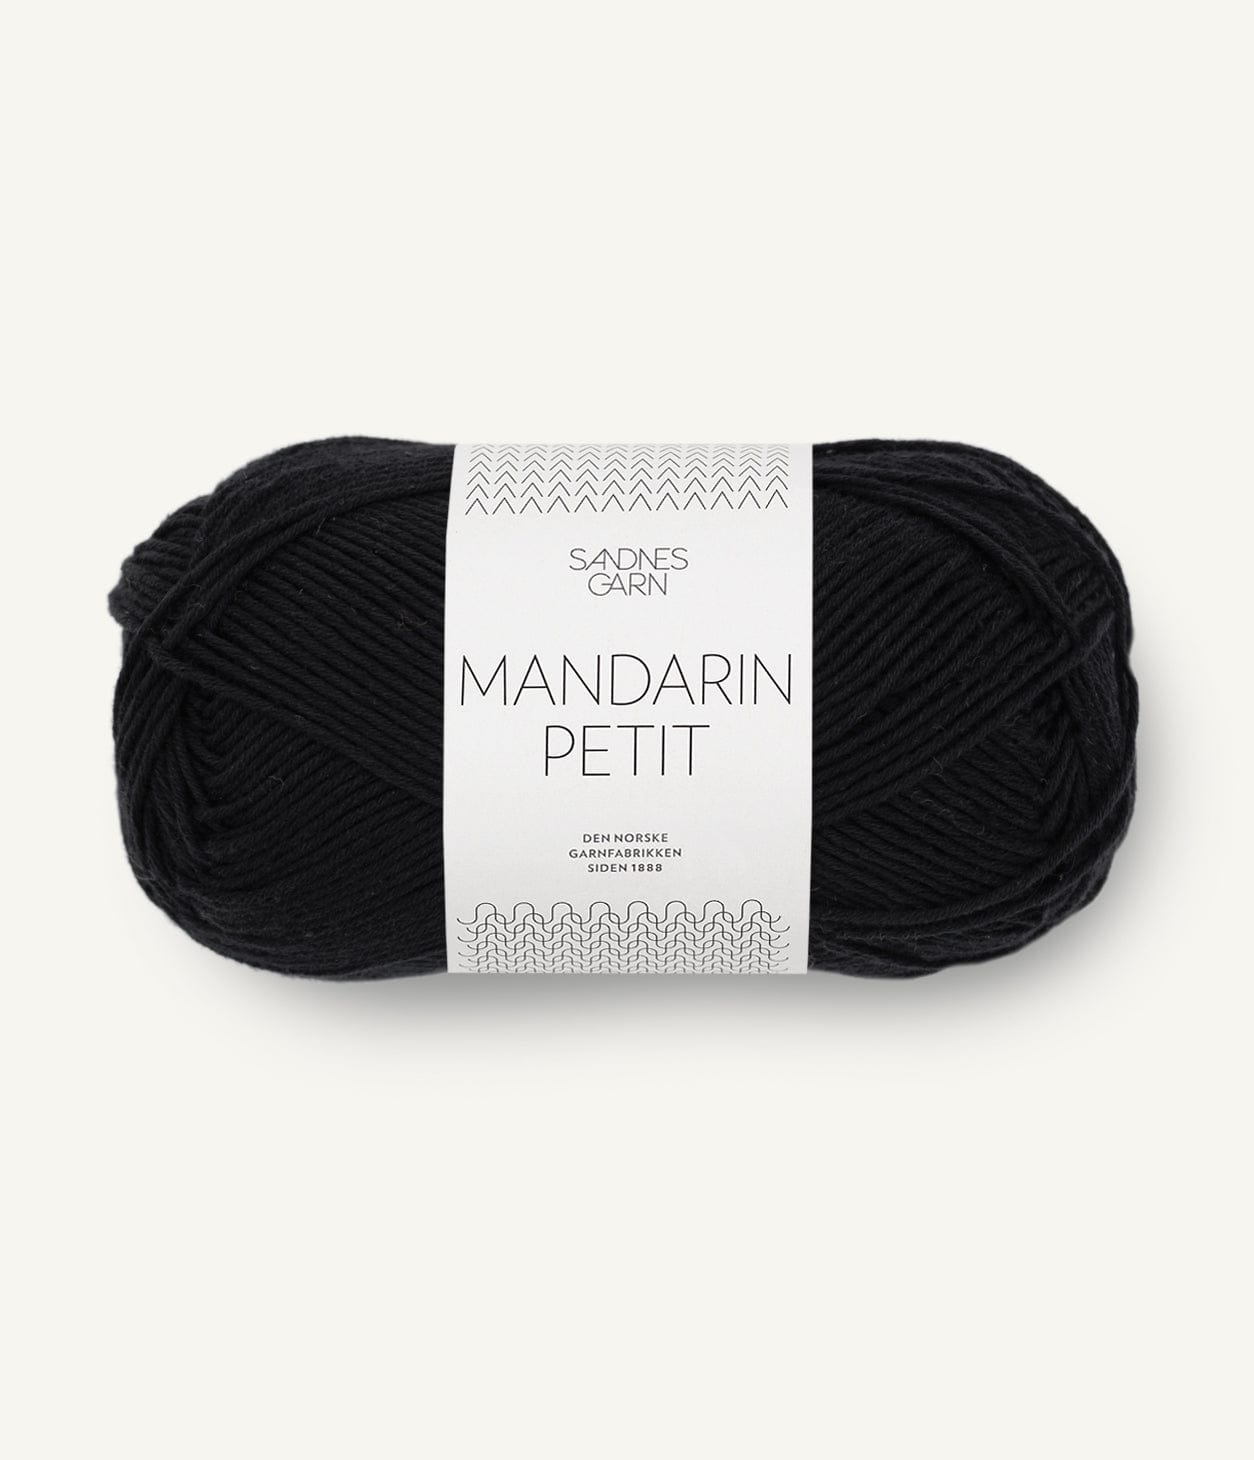 MANDARIN PETIT von SANDNES jetzt online kaufen bei OONIQUE